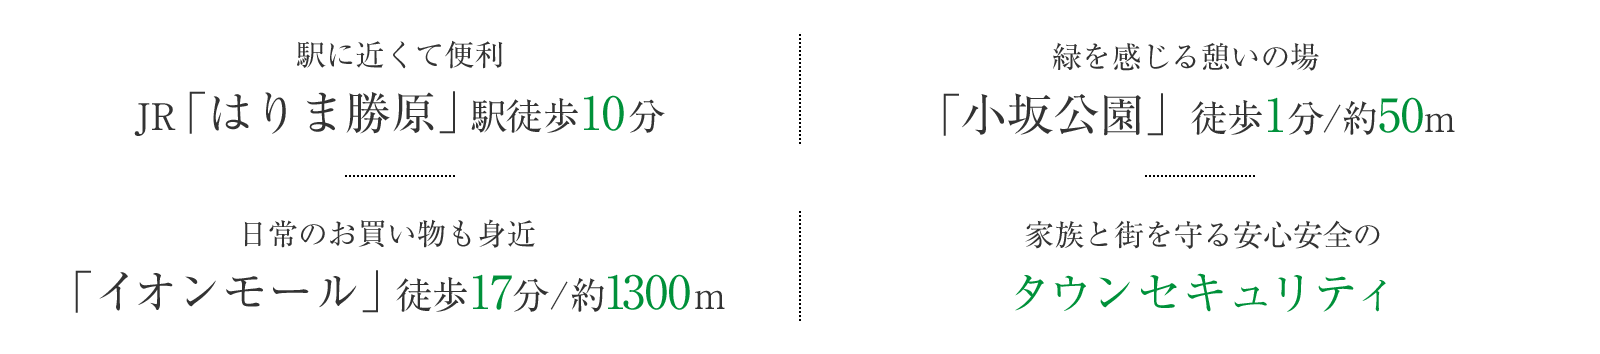 「はりま勝原」駅徒歩10分 「小坂公園」近接「イオンモール」徒歩圏 タウンセキュリティ